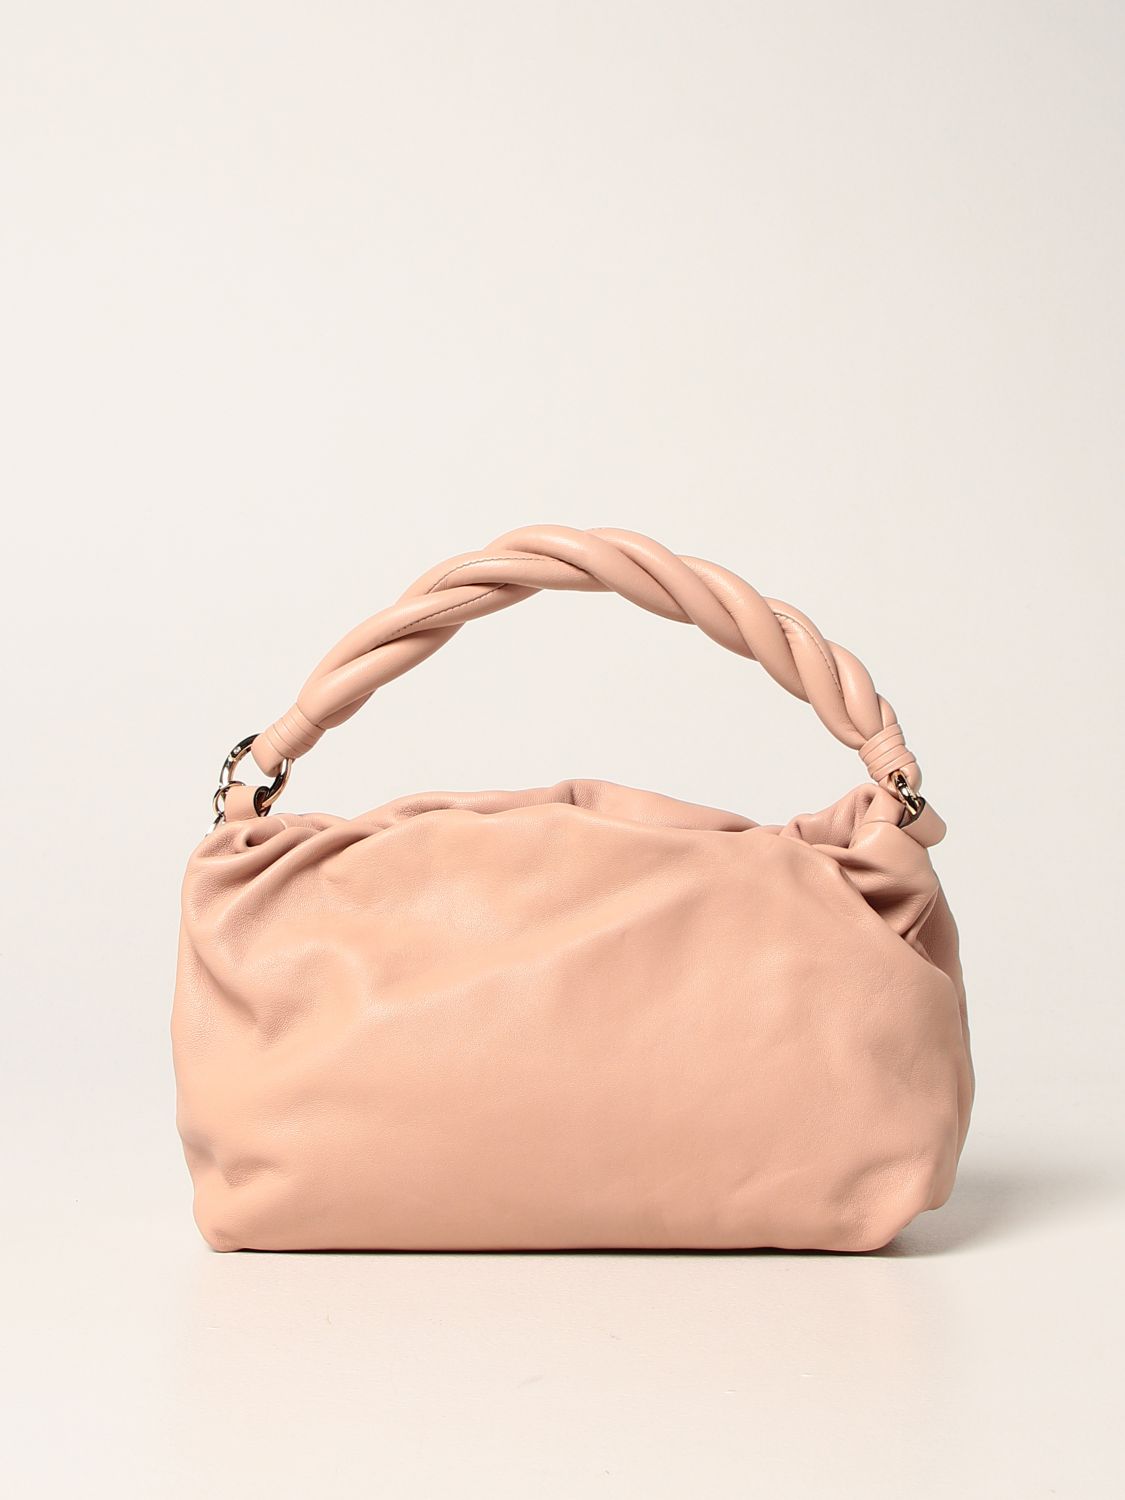 Handbag Red(V): Turnered Red (V) leather bag pink 1